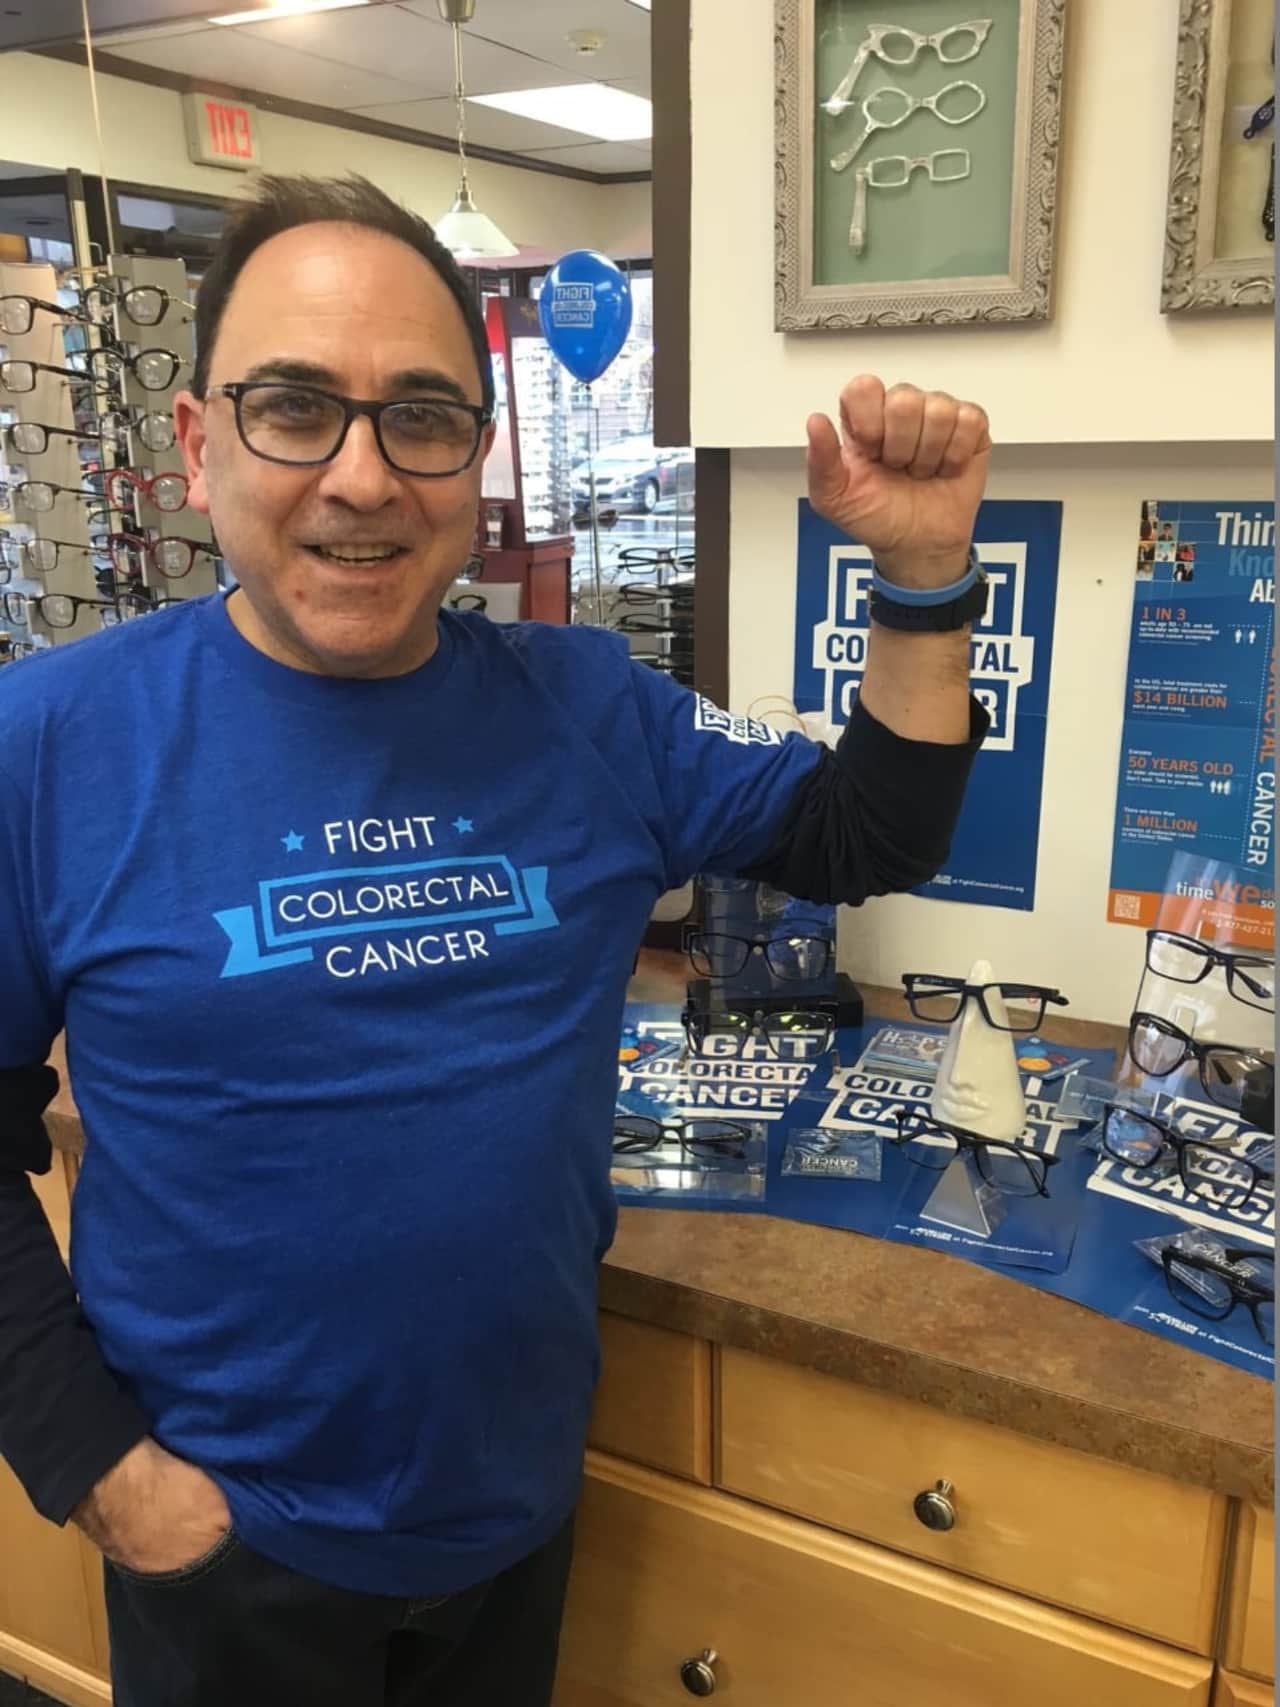 Fort Lee business owner and cancer survivor Bob Ceragno sports a "Fight Colorectal Cancer" t-shirt.